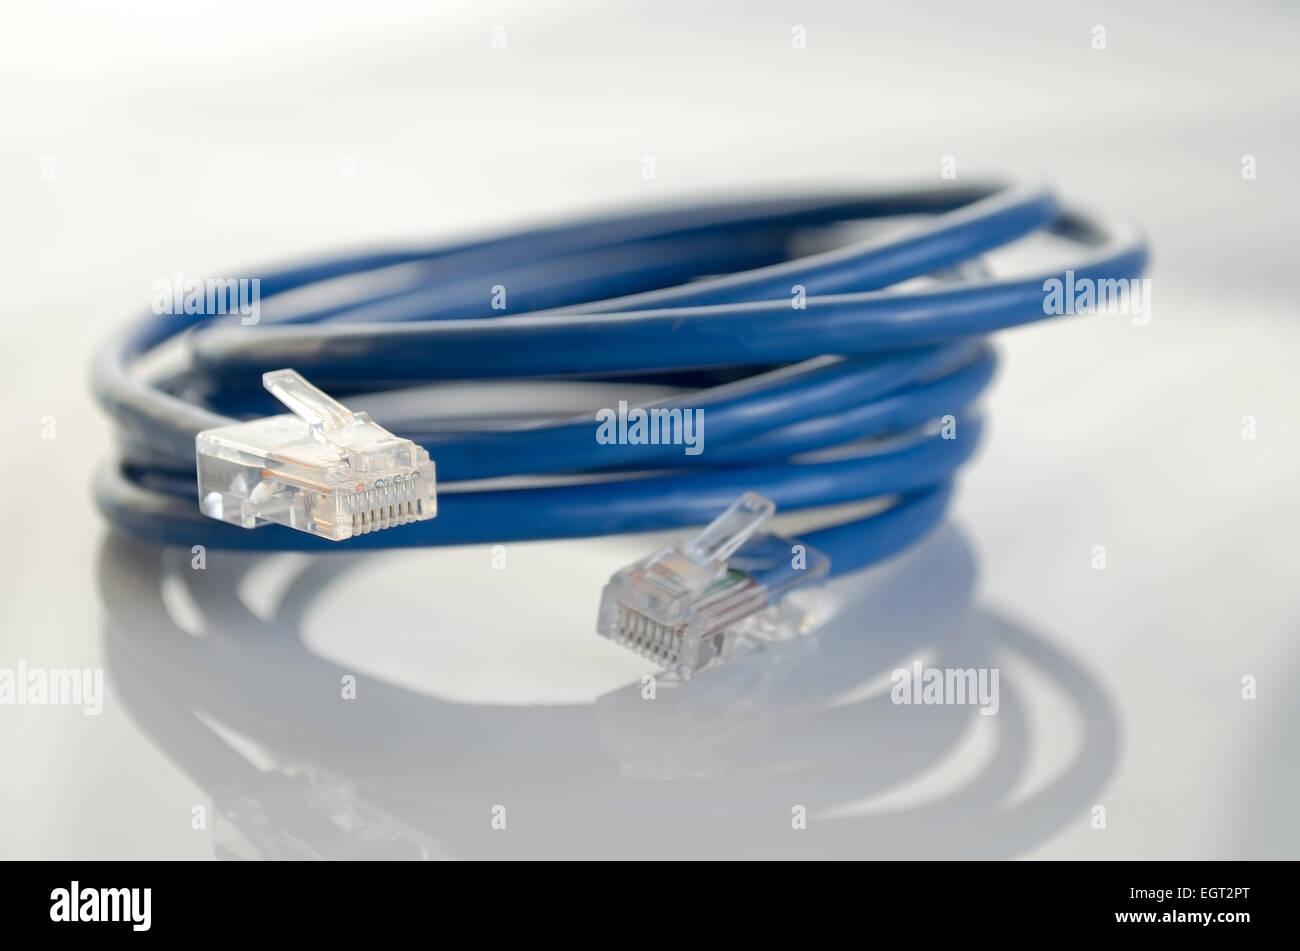 Rj45 blu spina di rete su bianco Foto Stock